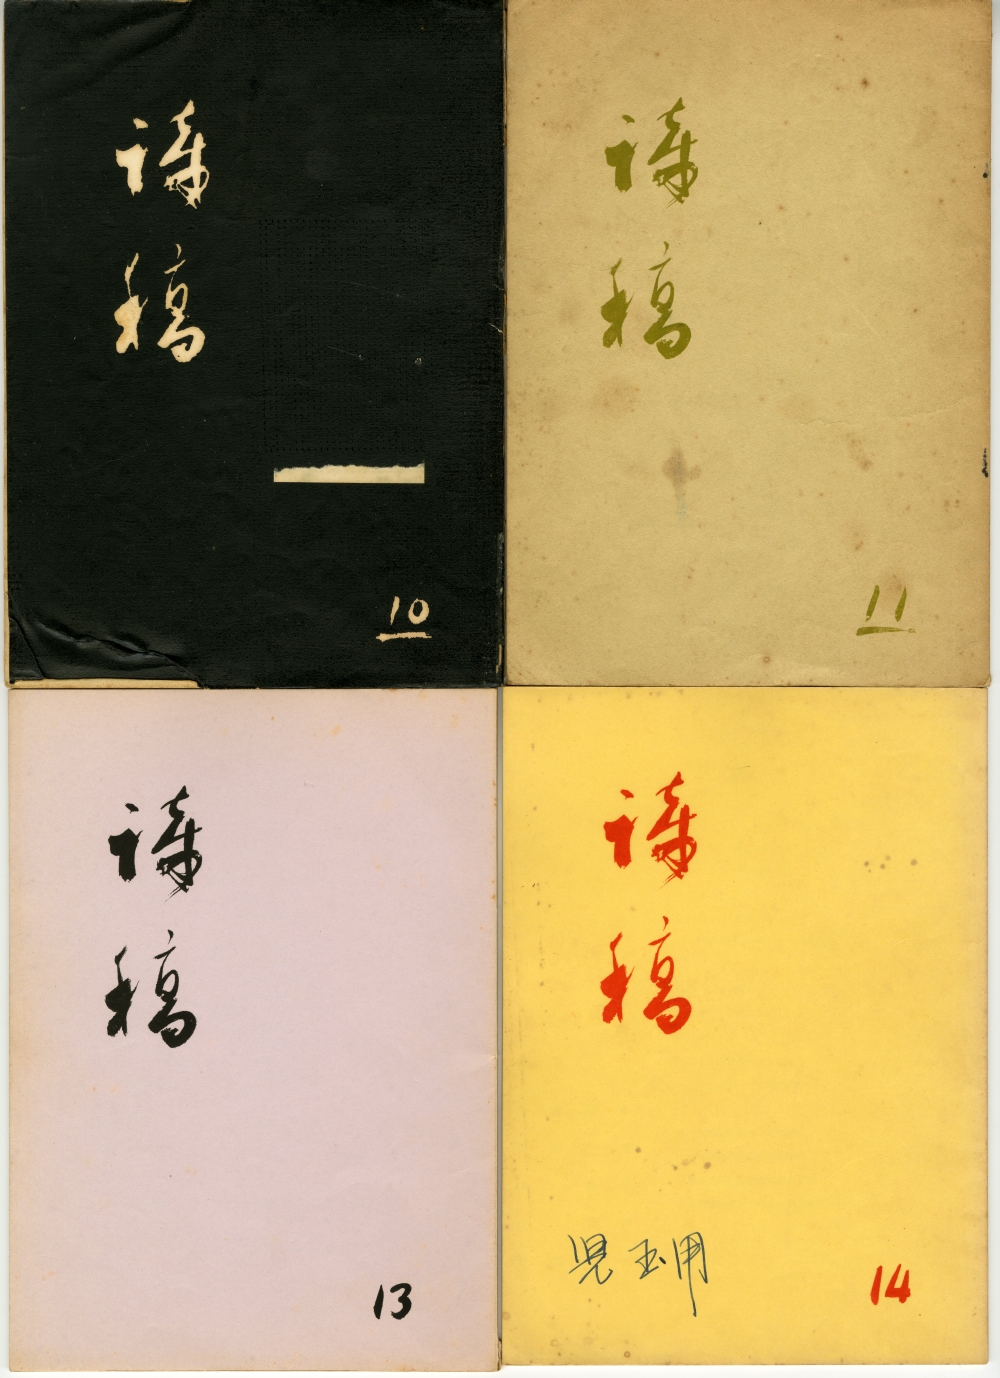 1966『詩稿』10、11、13、14号